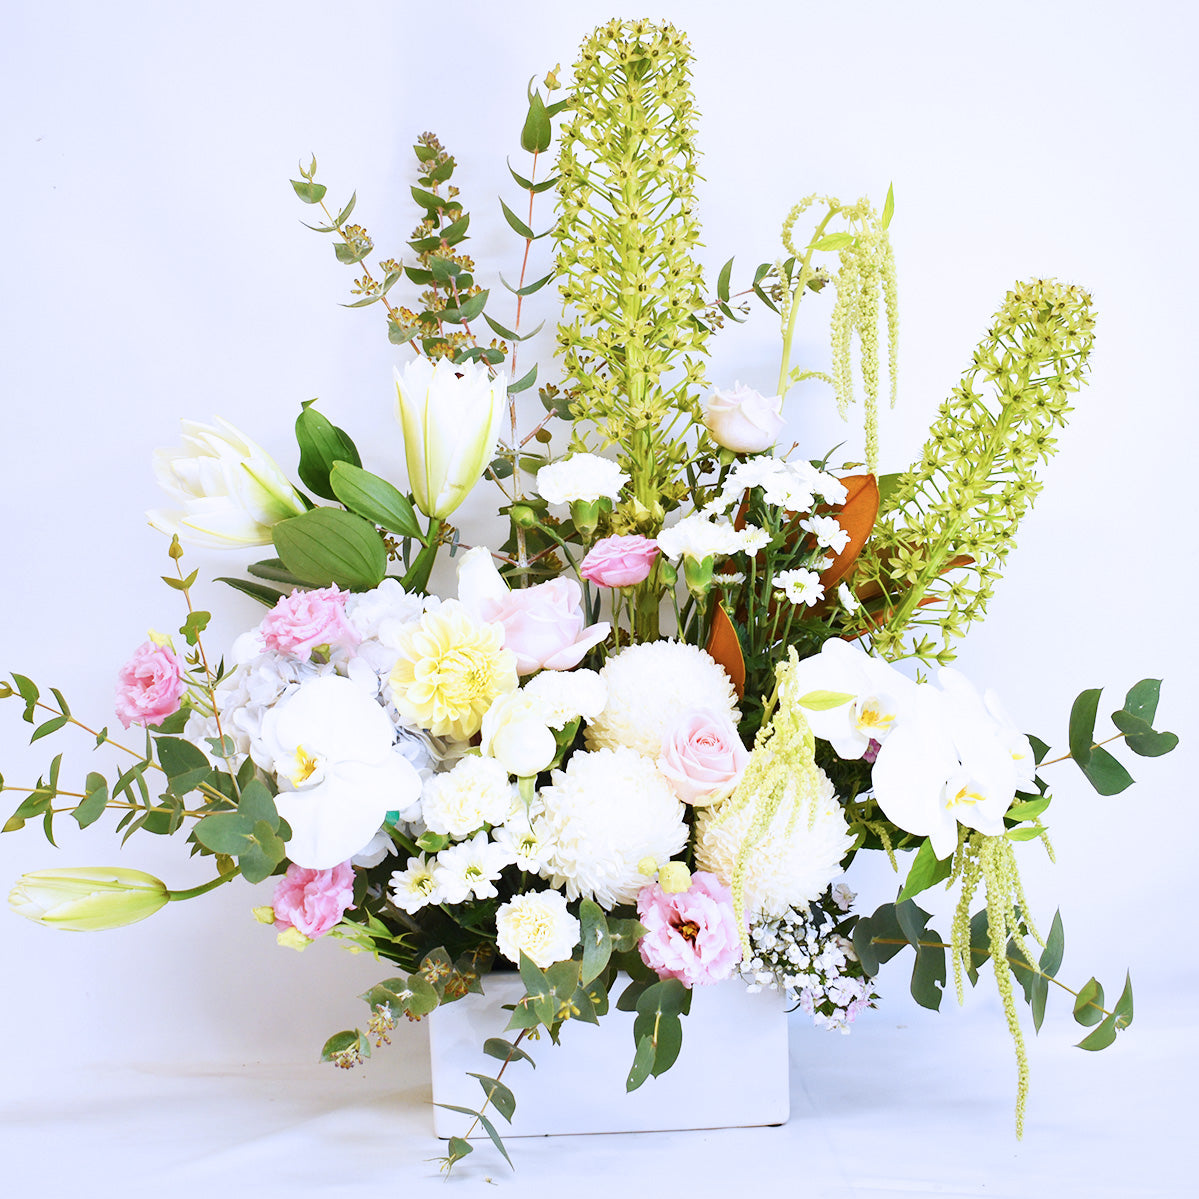 Florist&#39;s Premium Spring Blossoms + Ceramic Pot!